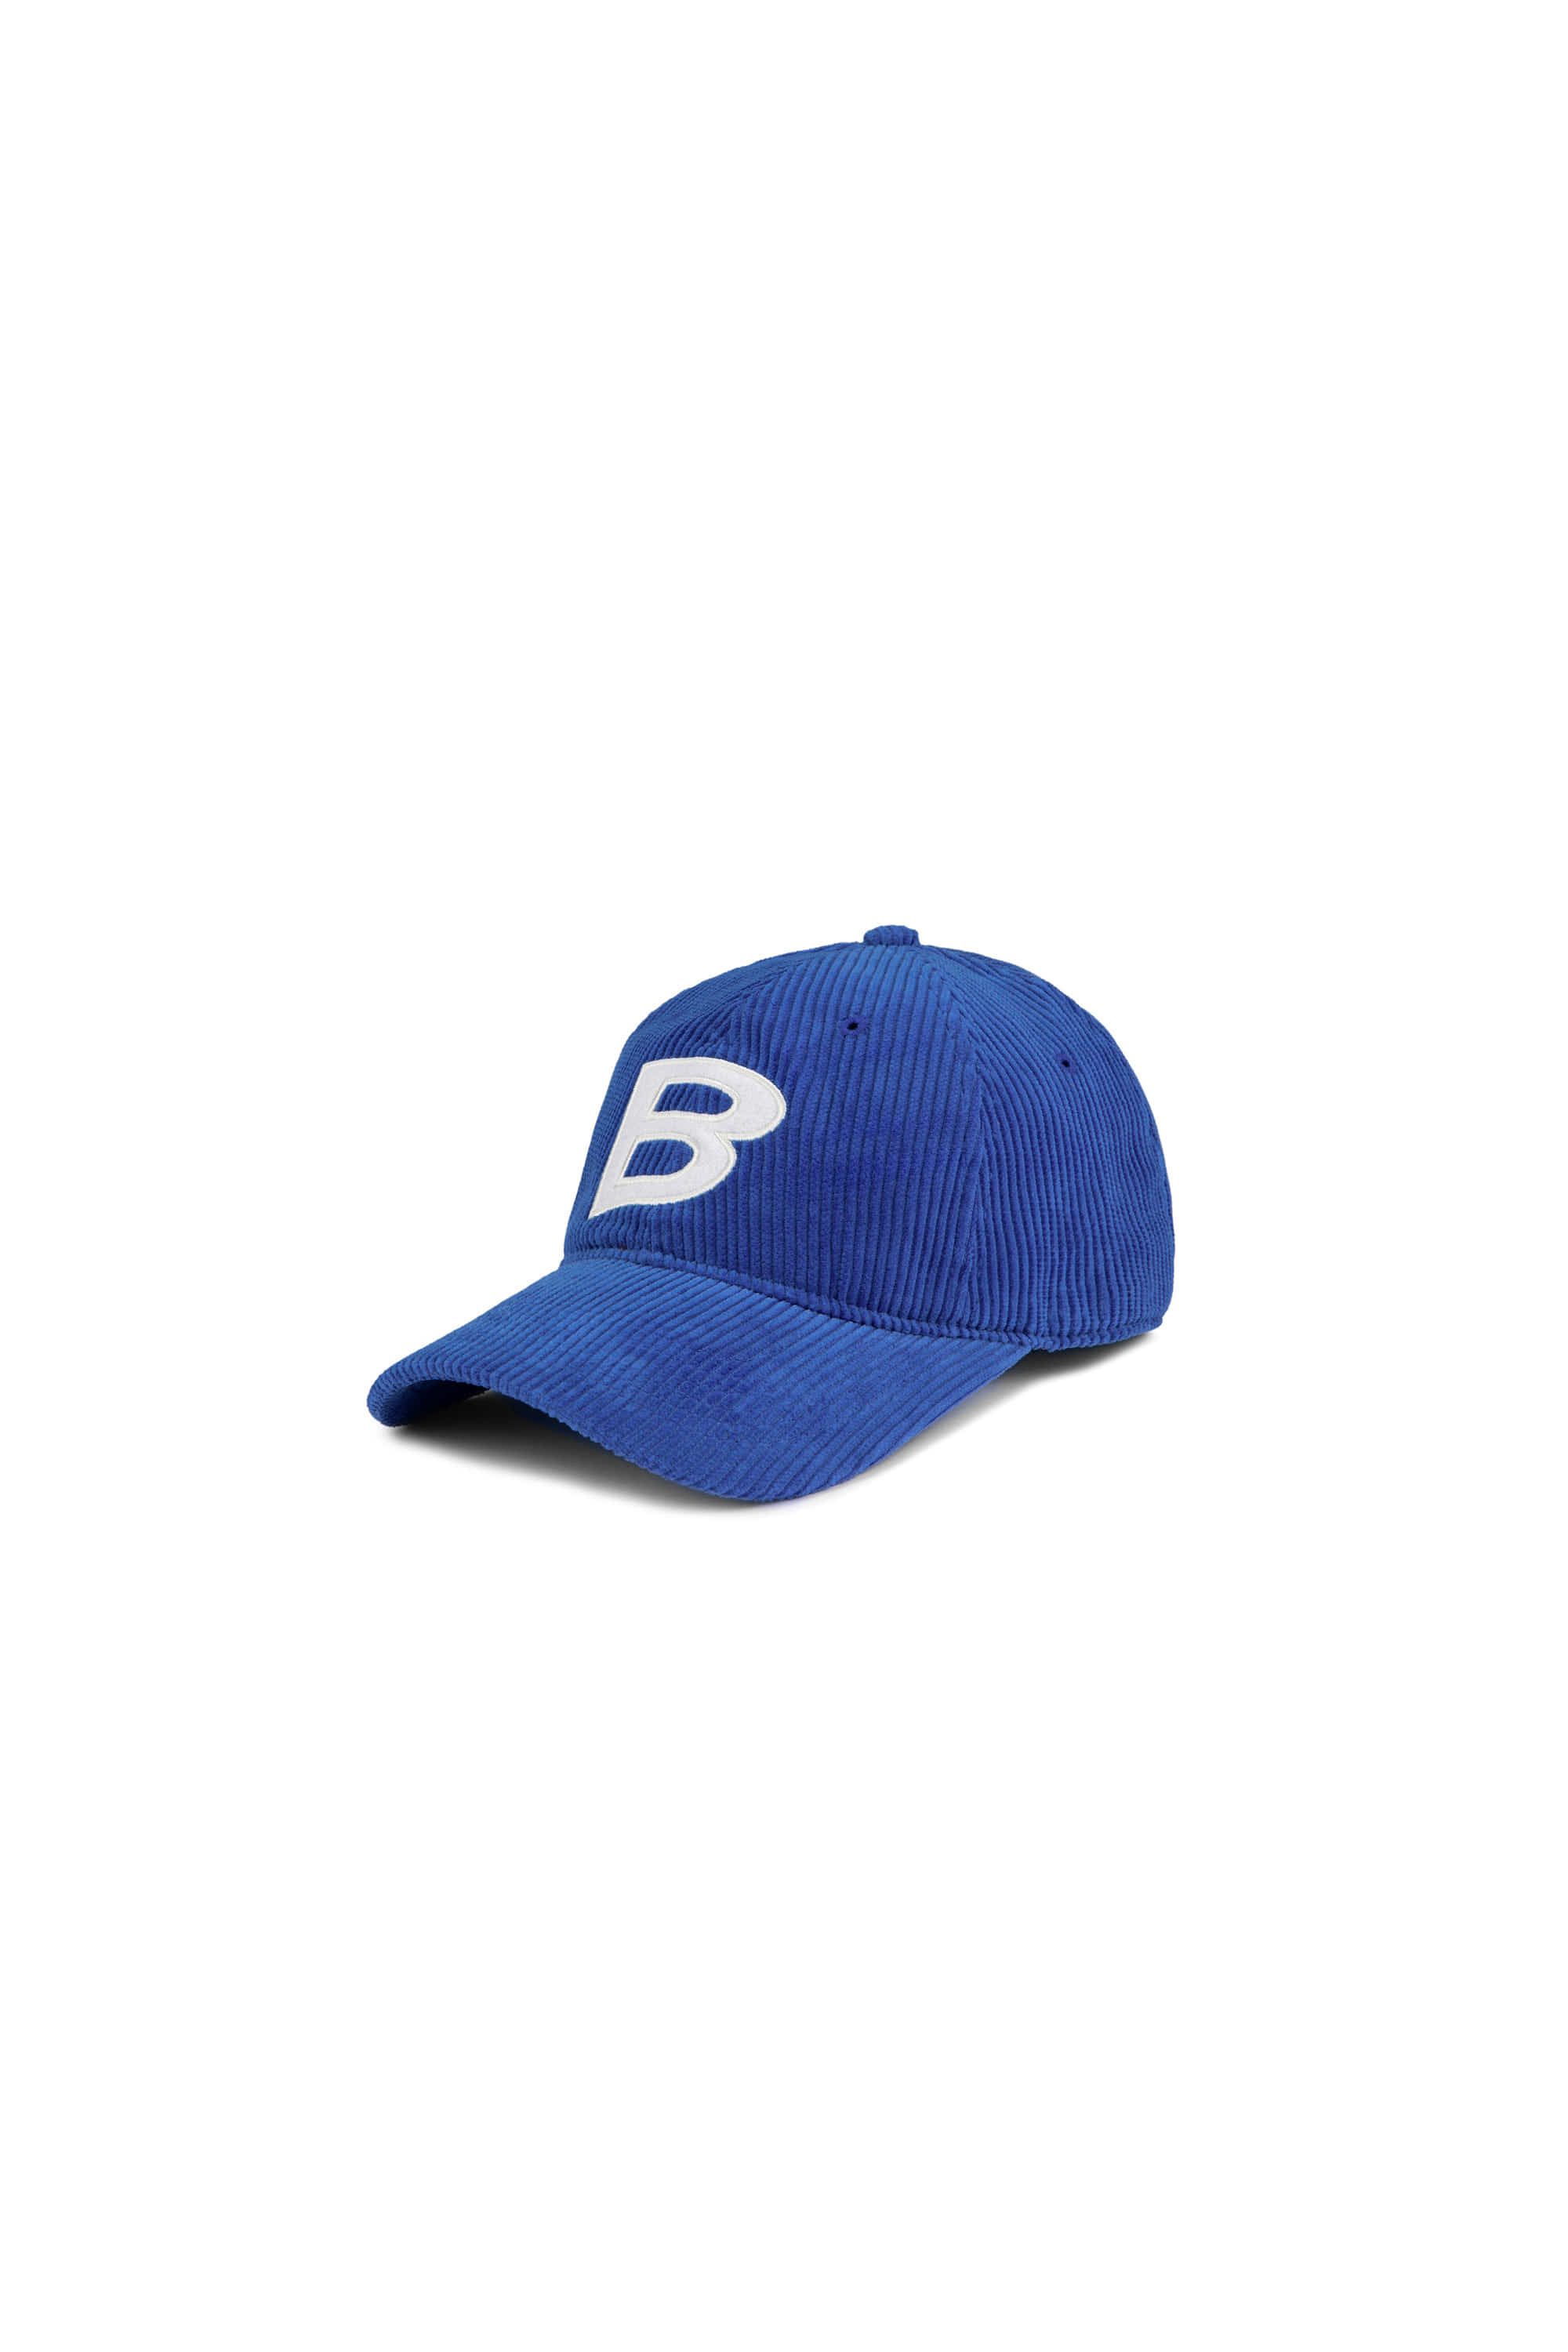 B PATCH CORDUROY CAP - COBALT BLUE